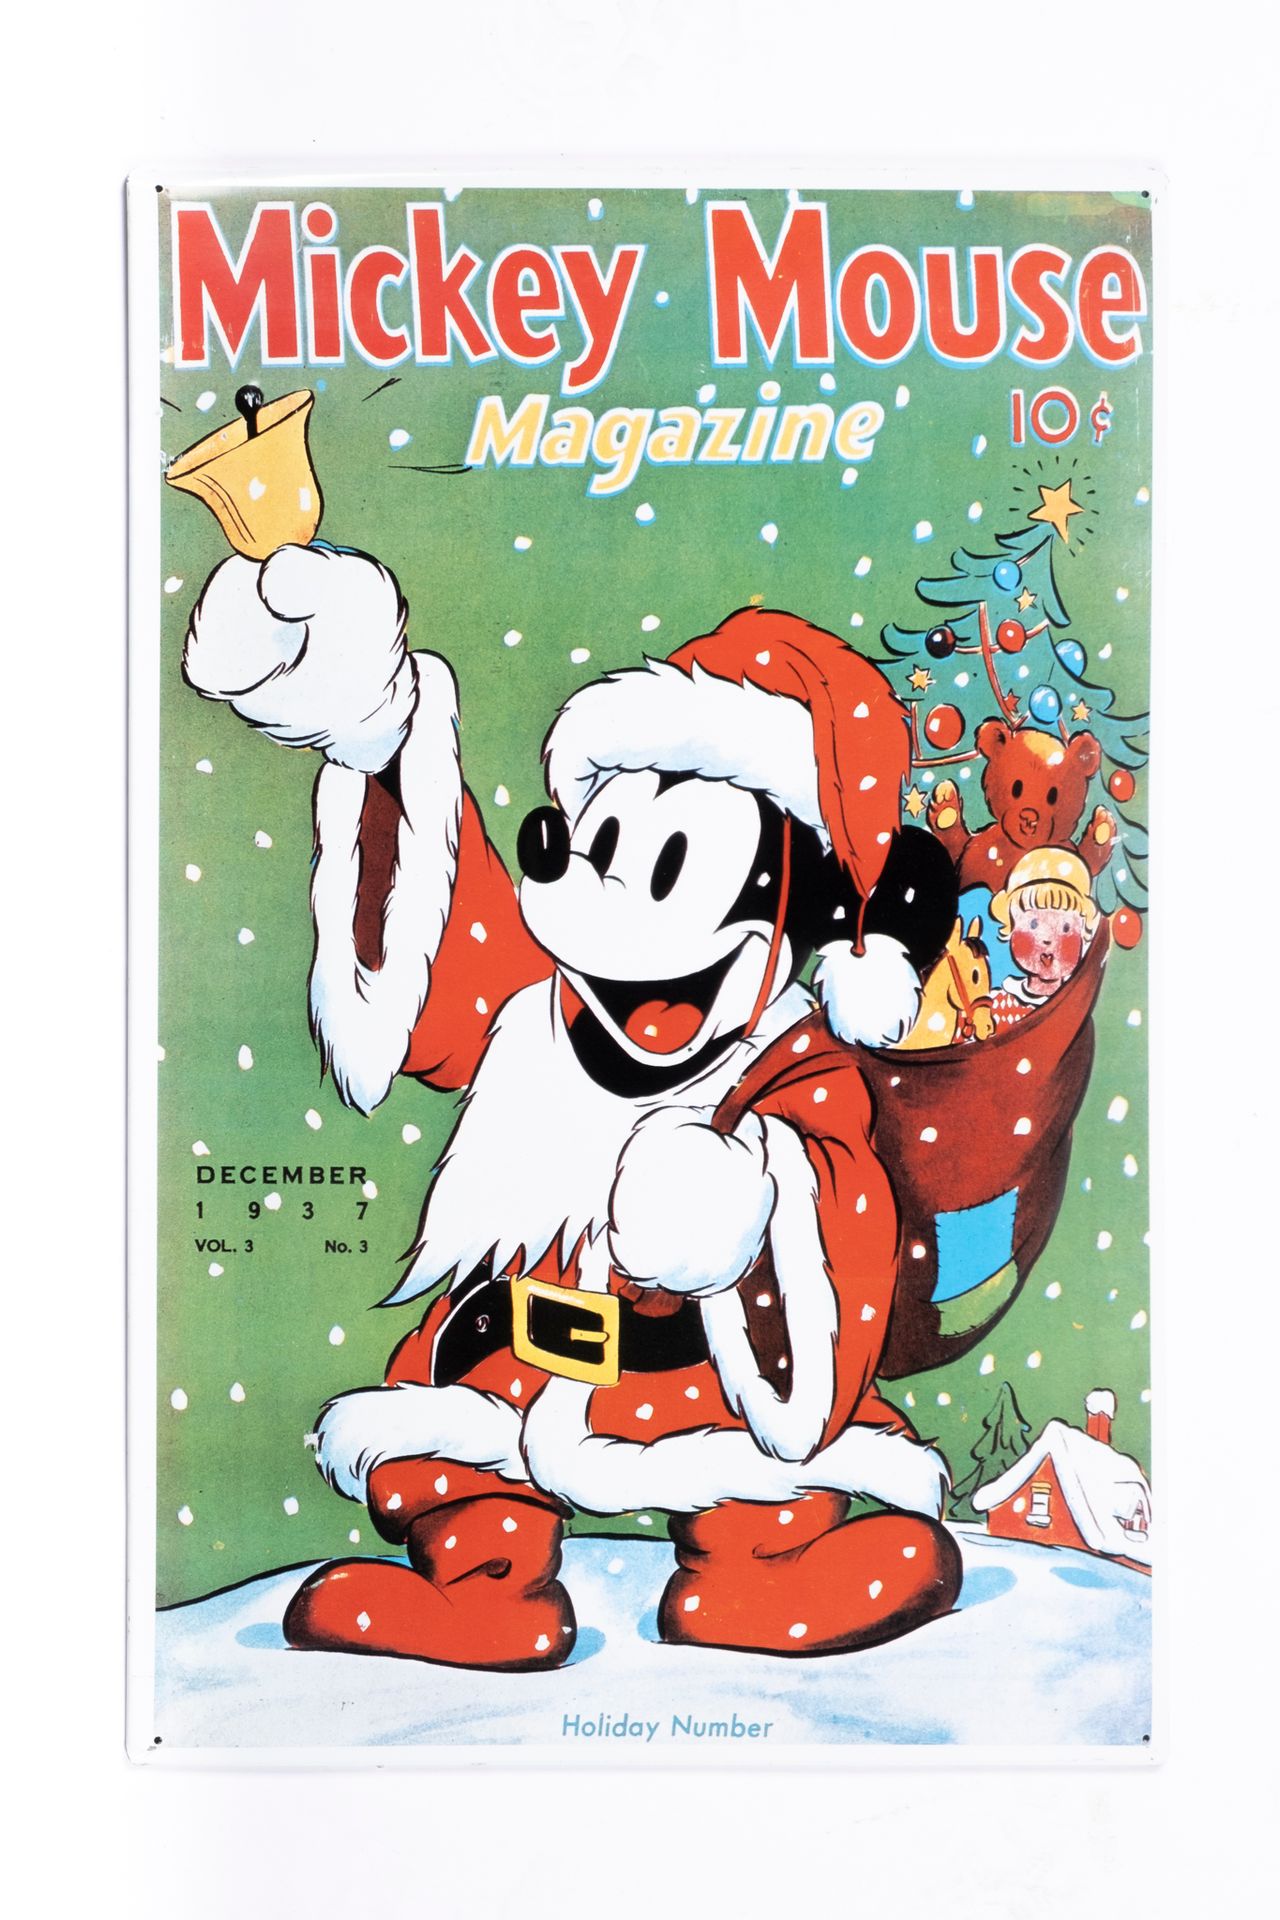 Walt Disney ( 1901 - 1966 ) Revista Mickey Mouse (placa metálica estampada)